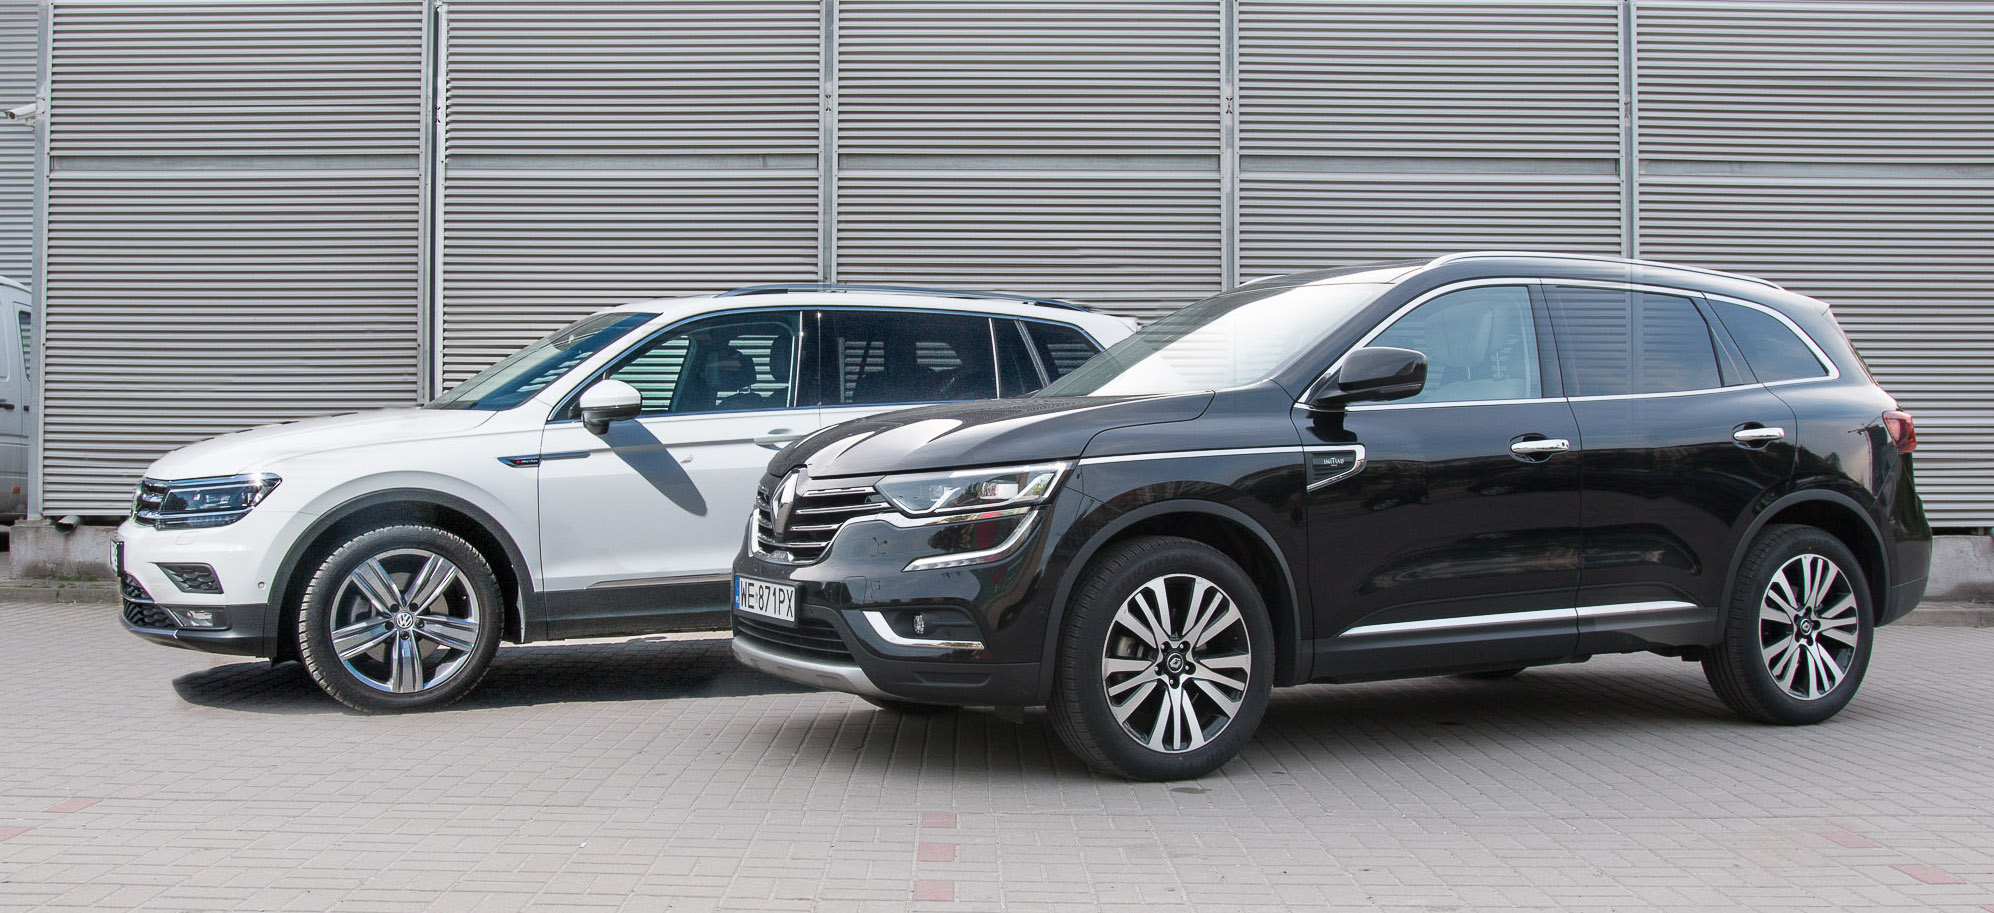 Porównanie: VW Tiguan Allspace kontra Renault Koleos. Czy na rynku jest za dużo SUV-ów?